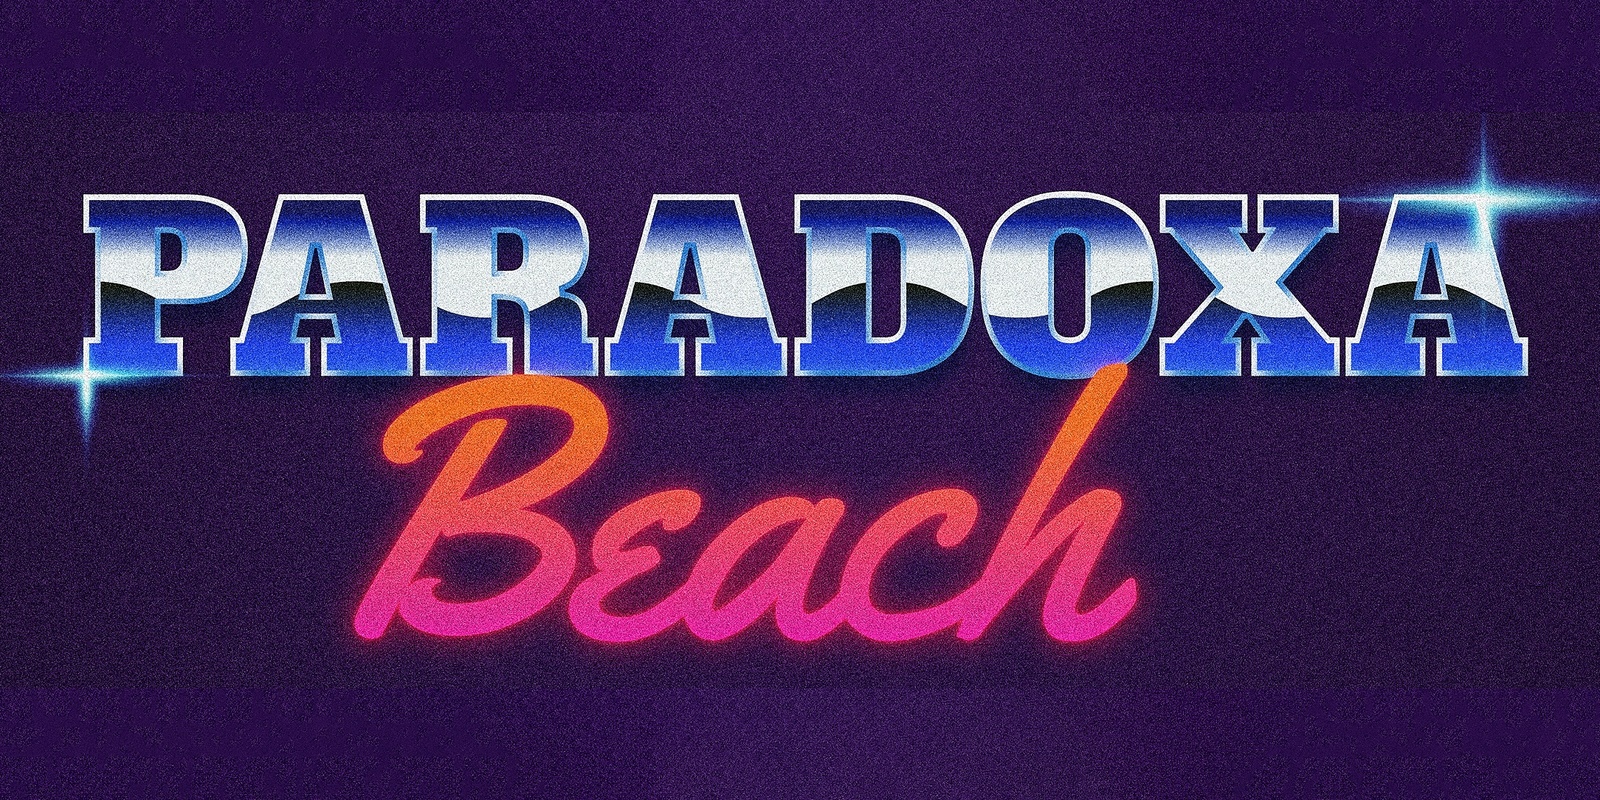 Banner image for Paradoxa Beach